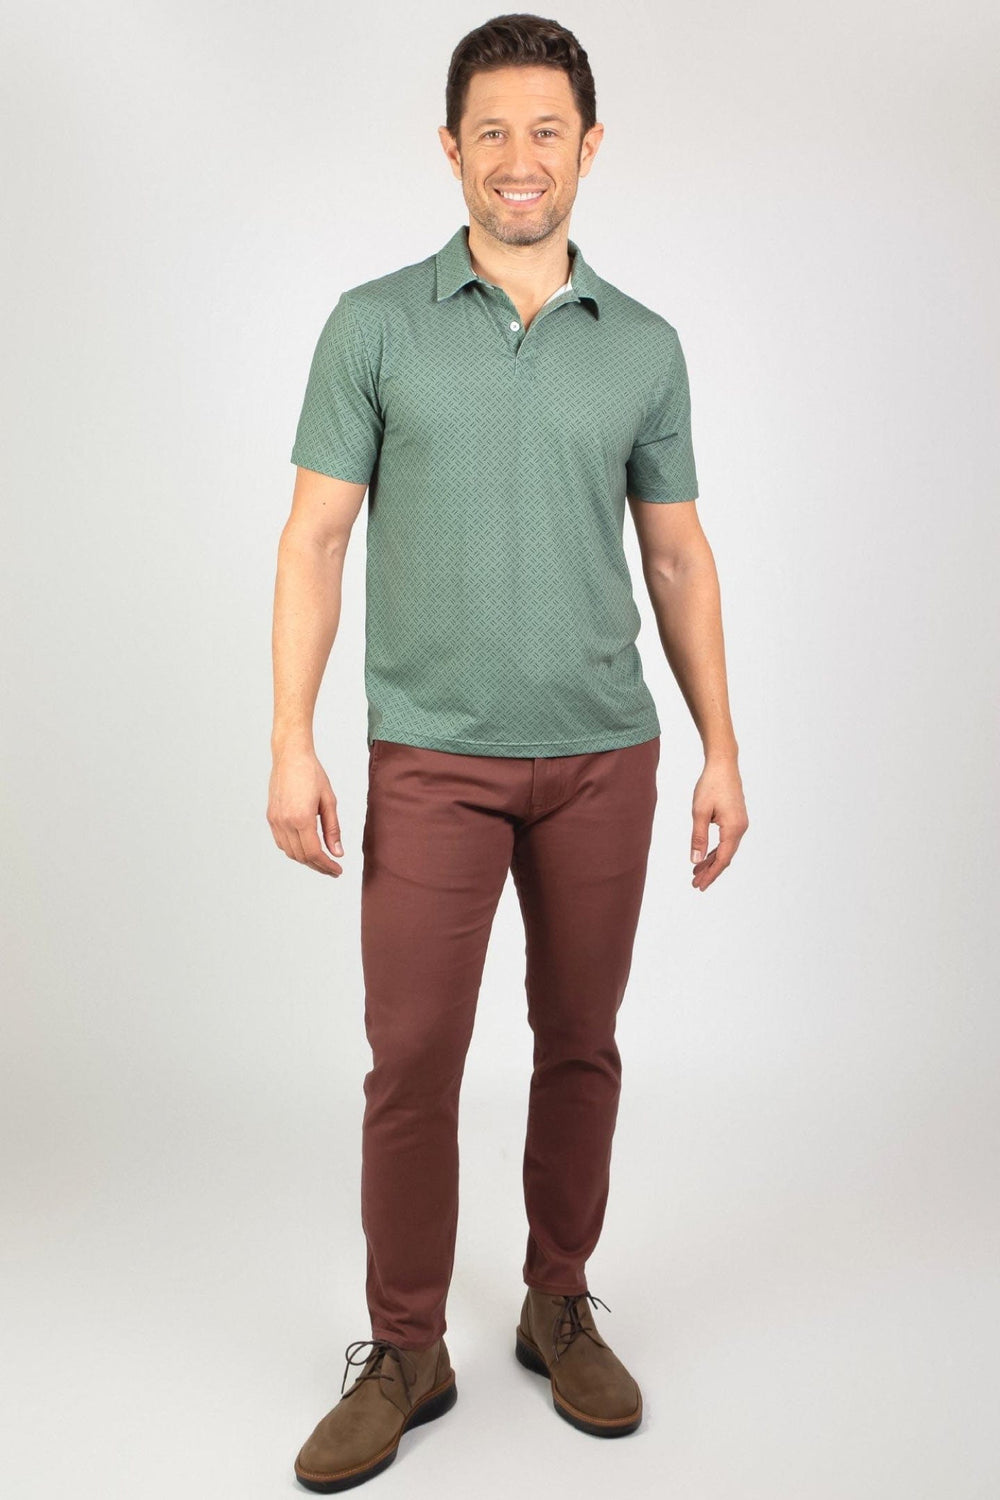 Buy Green Strikes Tech Polo Shirt for Short Men | Ash & Erie   Tech Polo Shirt